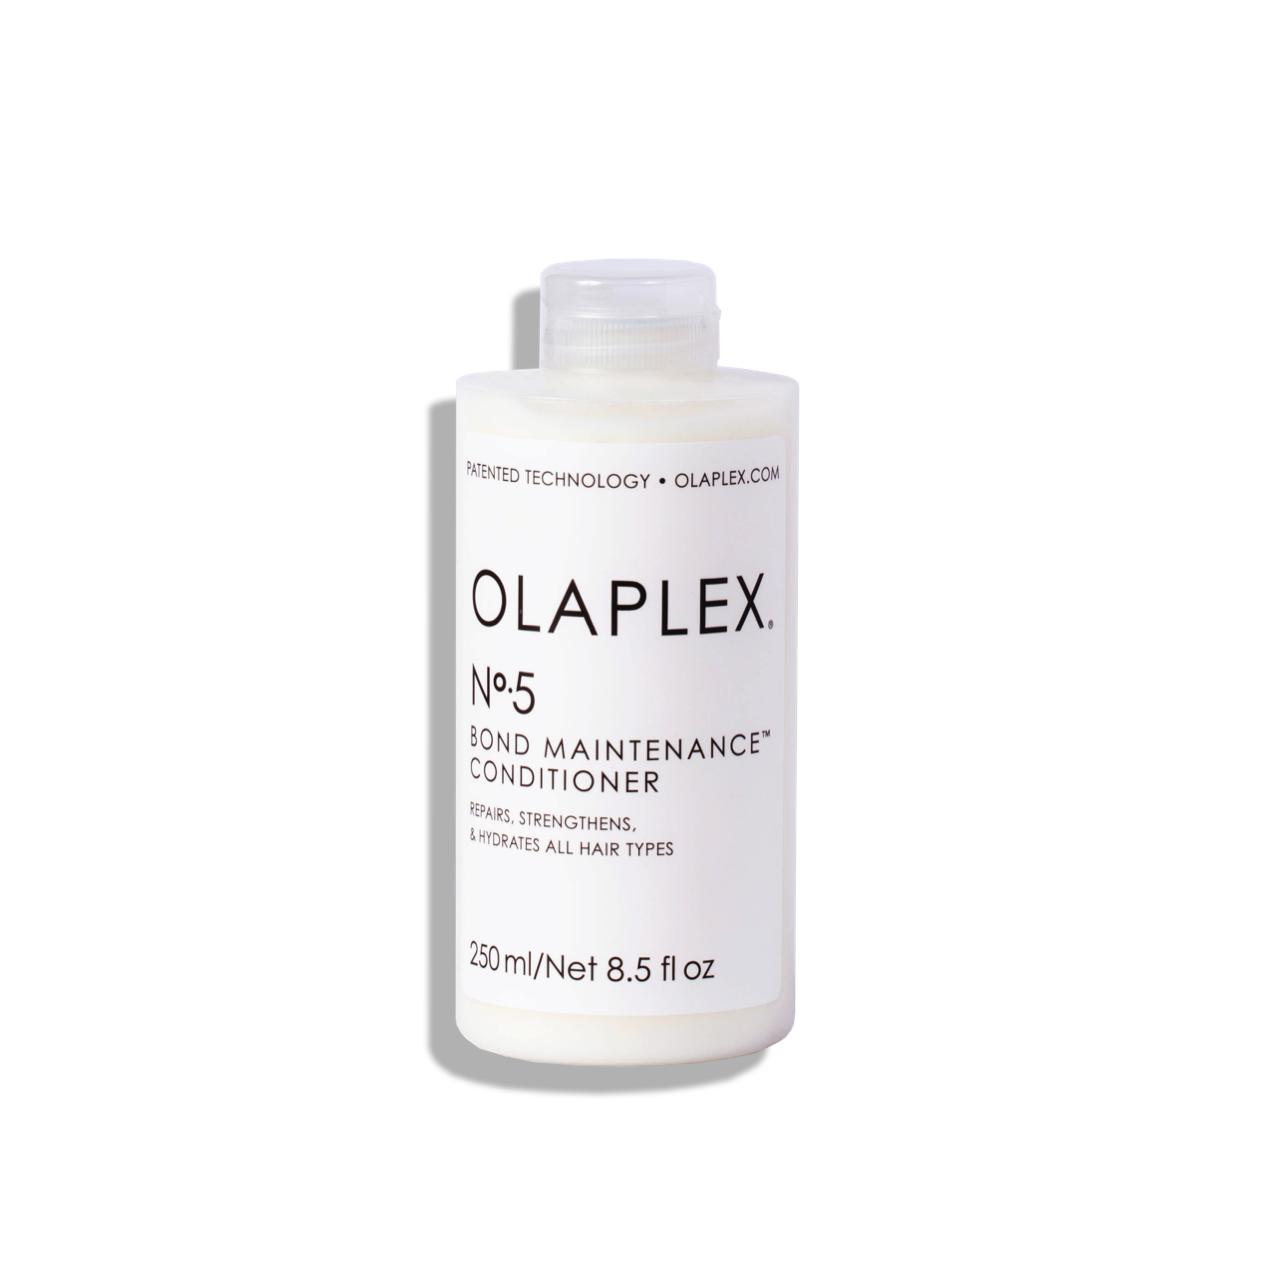 OLAPLEX No.5